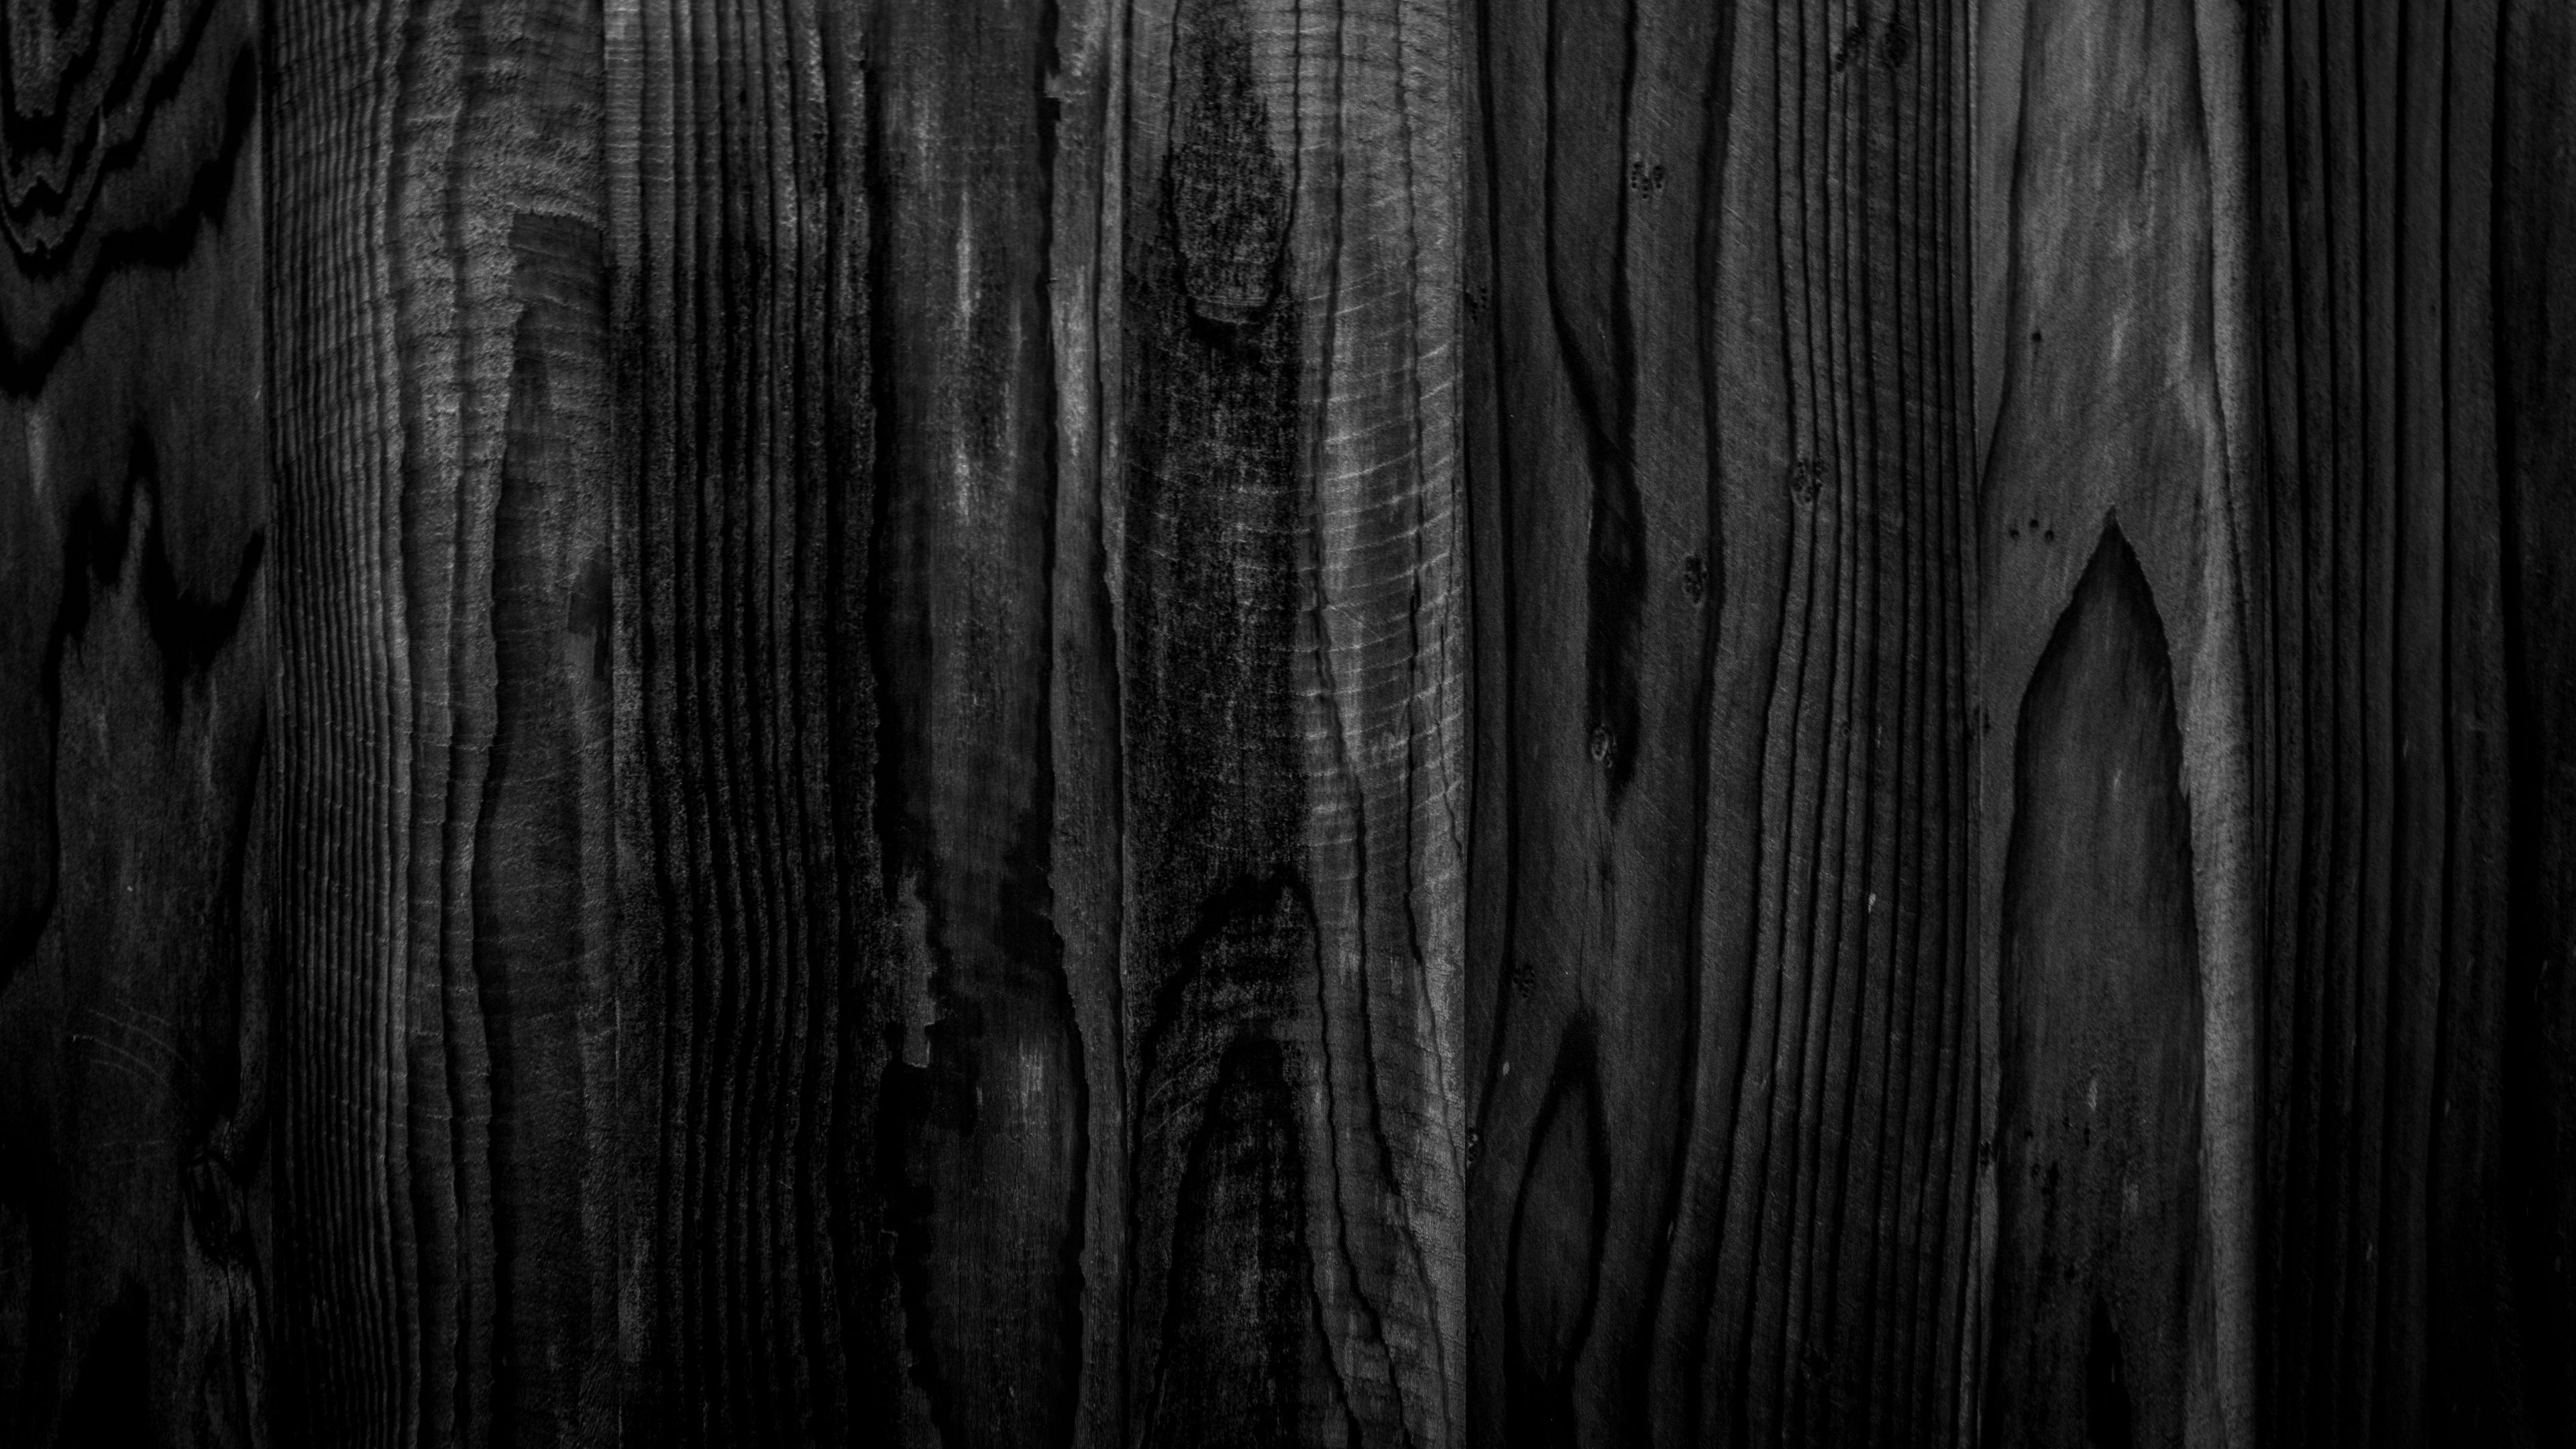 Với vân gỗ độc đáo và màu sắc tự nhiên, dòng sản phẩm vân gỗ sẽ tạo ra một hình ảnh đạt chuẩn và tinh tế cho không gian sống của bạn. Bức ảnh về vân gỗ sẽ giúp bạn trang trí cho căn phòng của mình một cách dễ dàng và mang đến cho bạn một trải nghiệm độc đáo và thú vị.